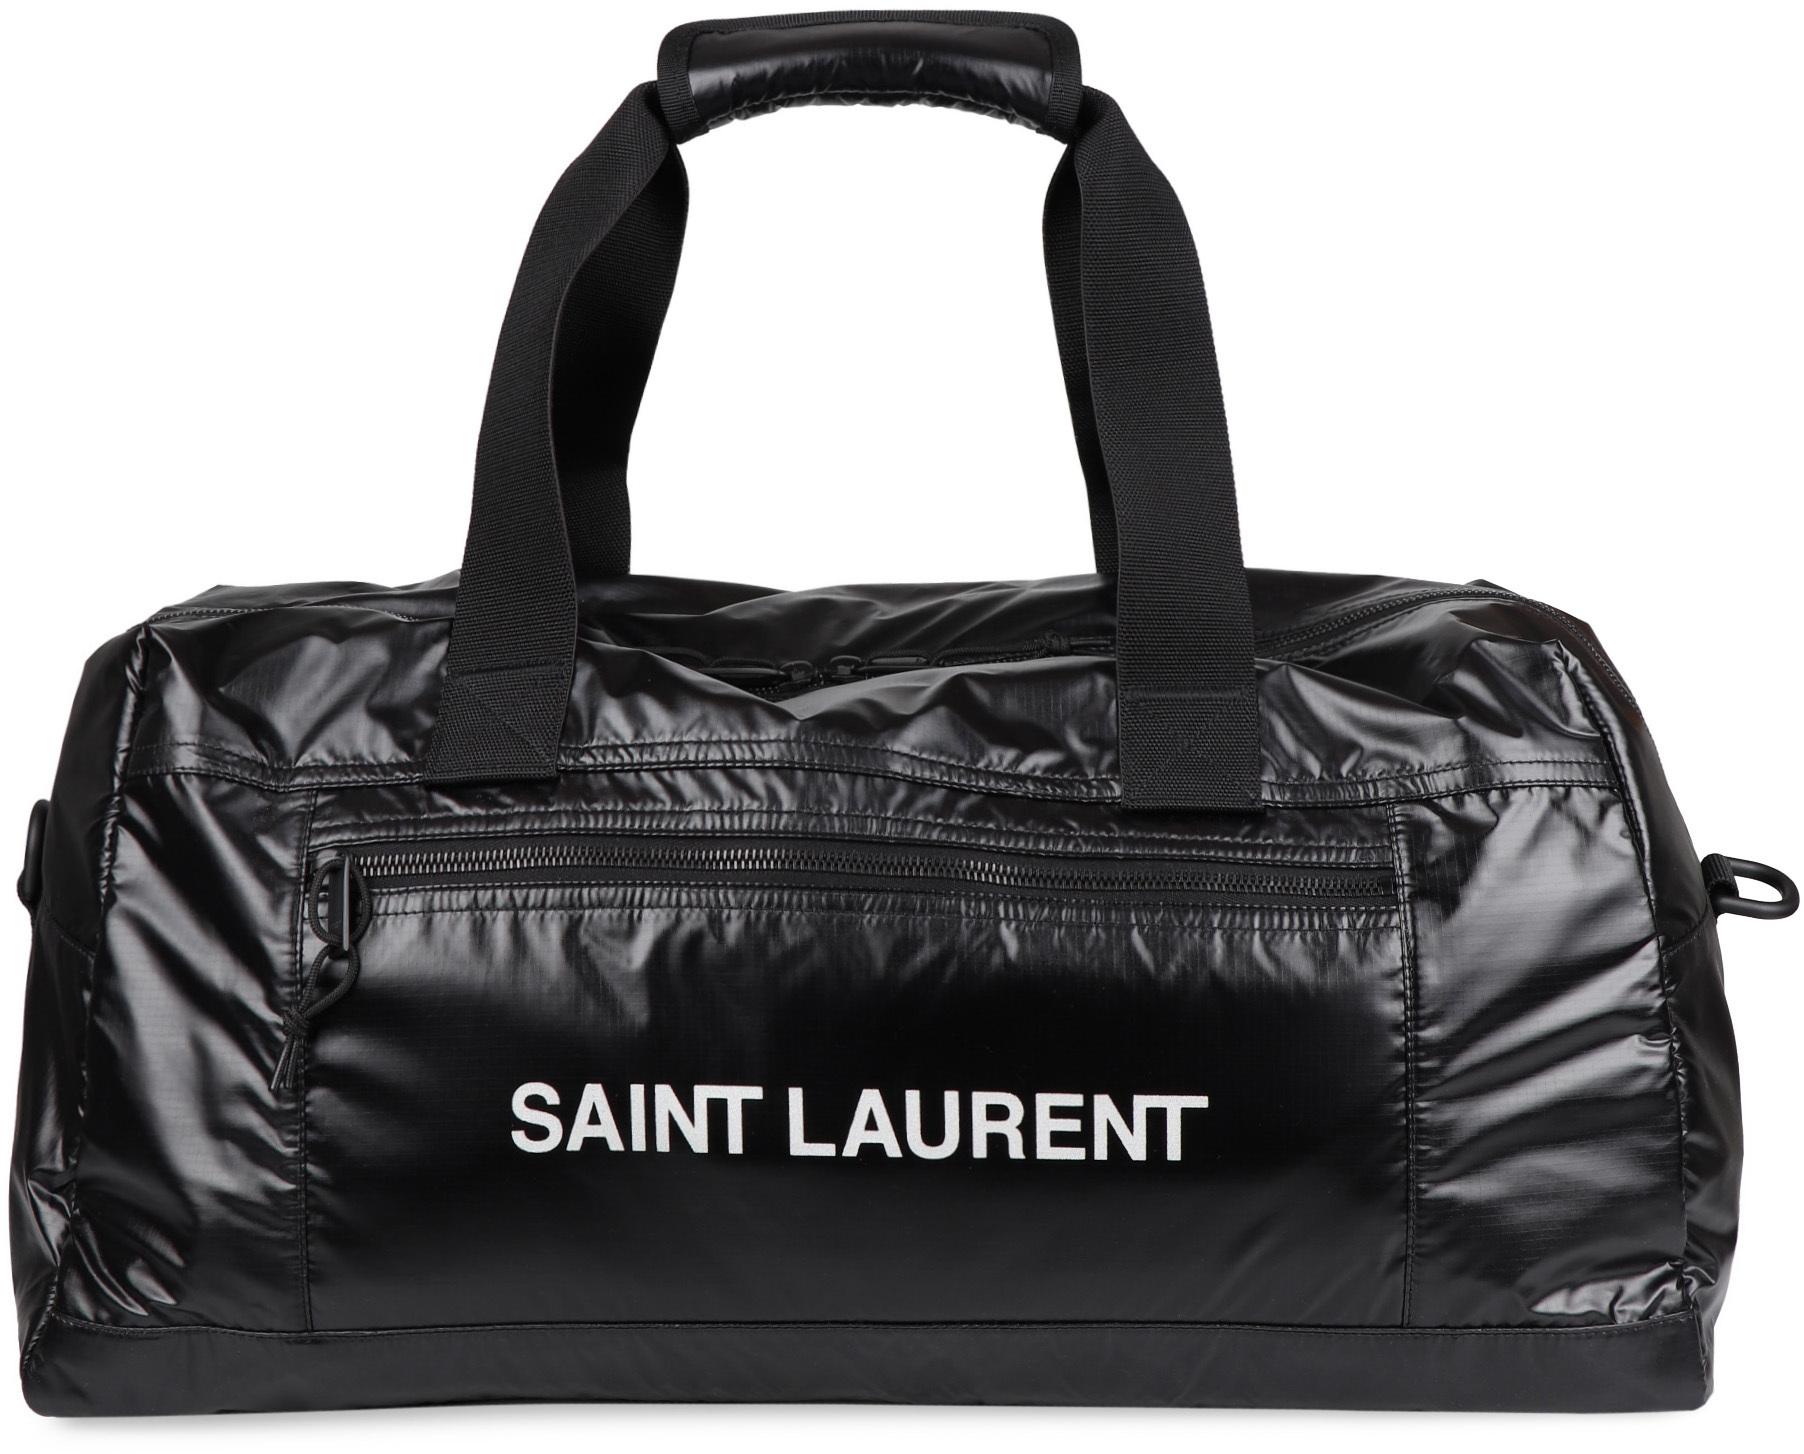 Saint Laurent Synthetic Nylon Travel Bag in Black for Men - Lyst